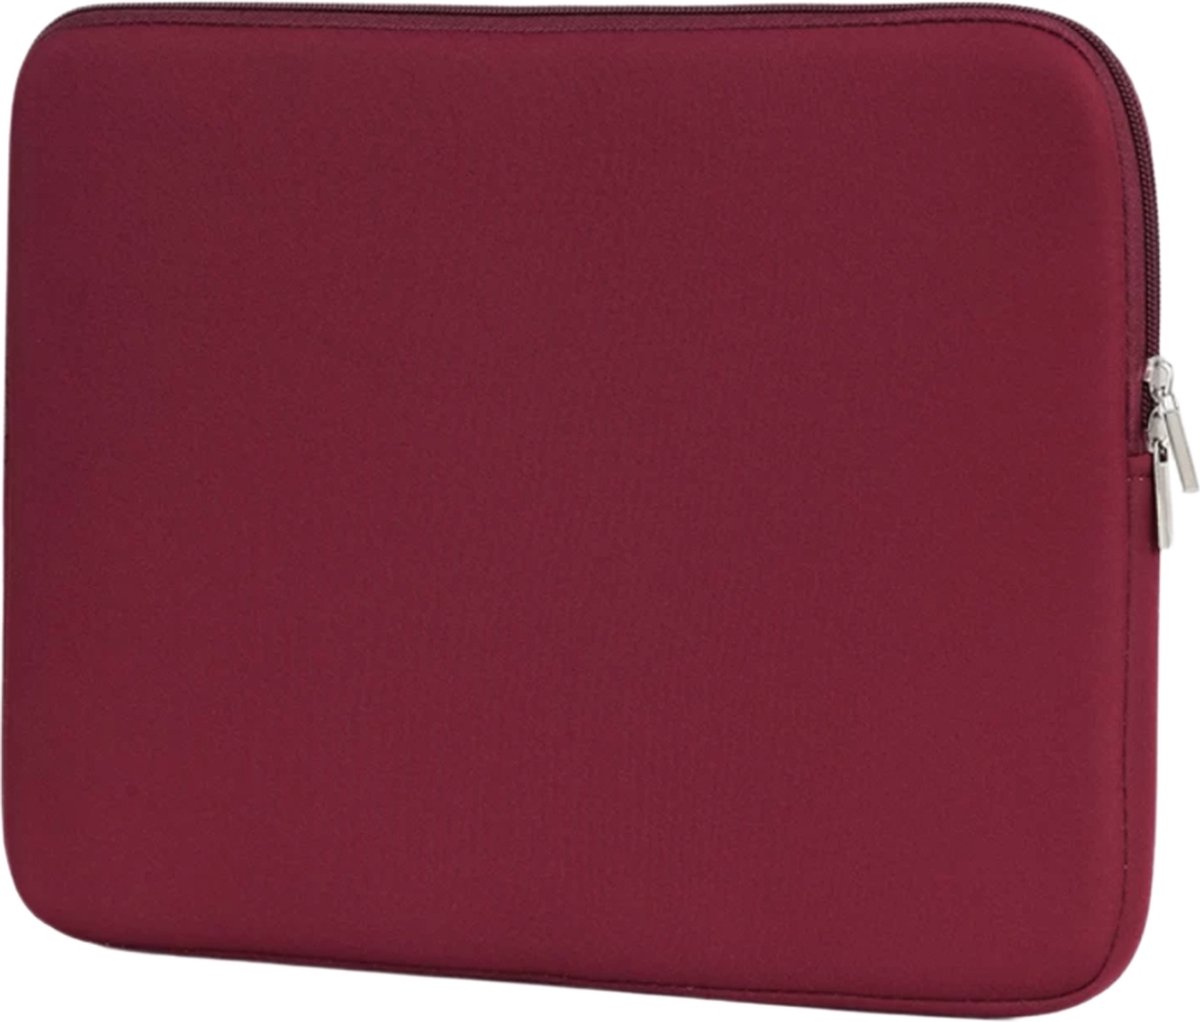 Laptop sleeve – universeel – 15,6 inch – waterbestendig – bordeaux rood - Schokproof